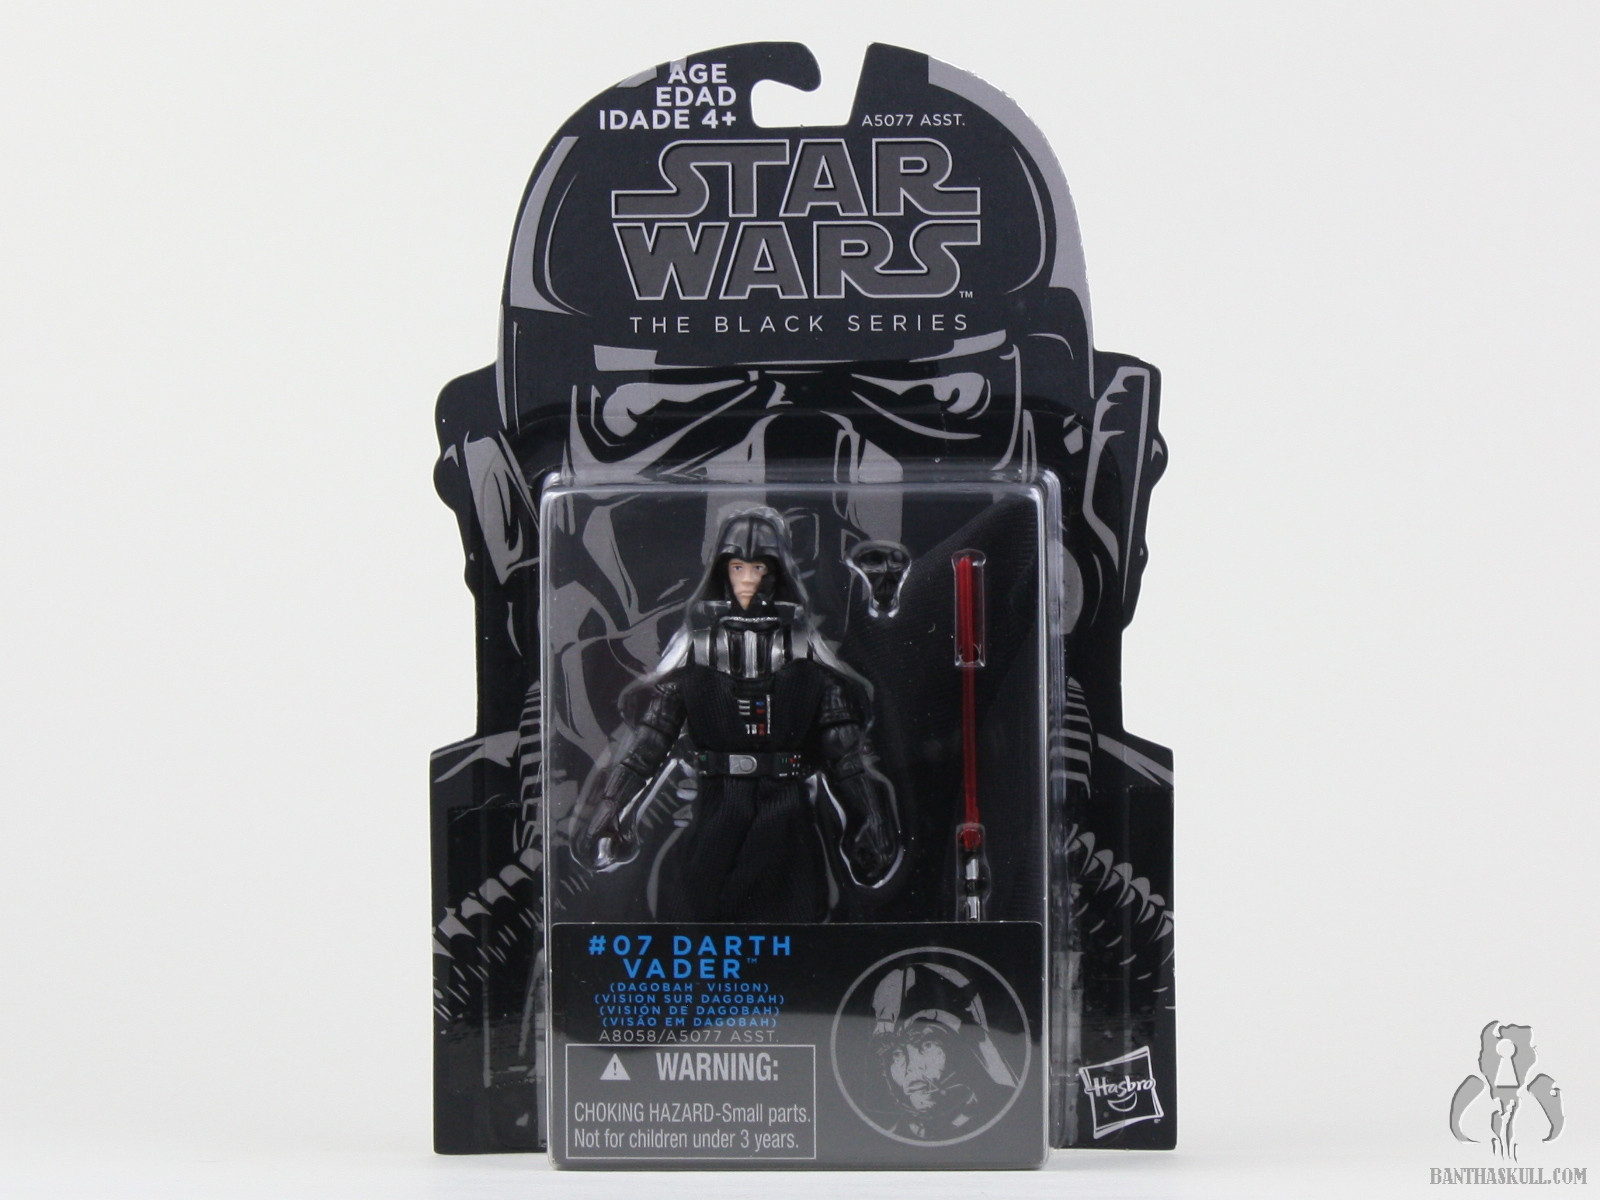 Star Wars Darth Vader #07 The Black Series Action Figure 2014 Dagobah Vision for sale online 